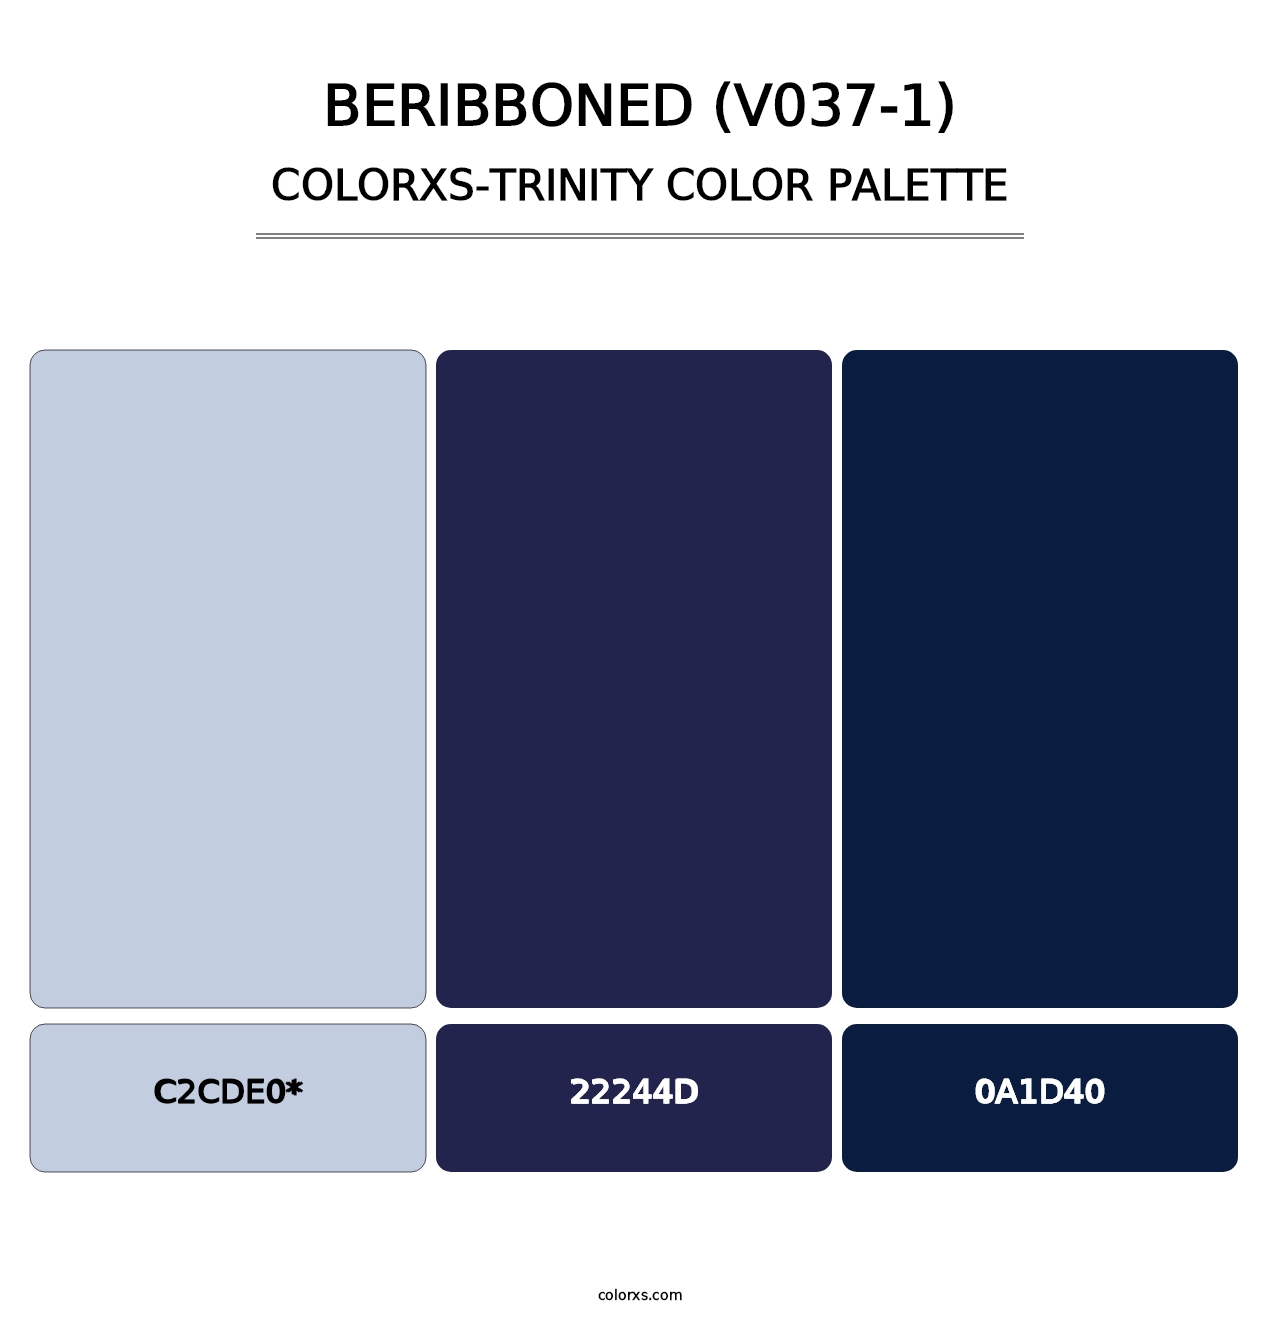 Beribboned (V037-1) - Colorxs Trinity Palette